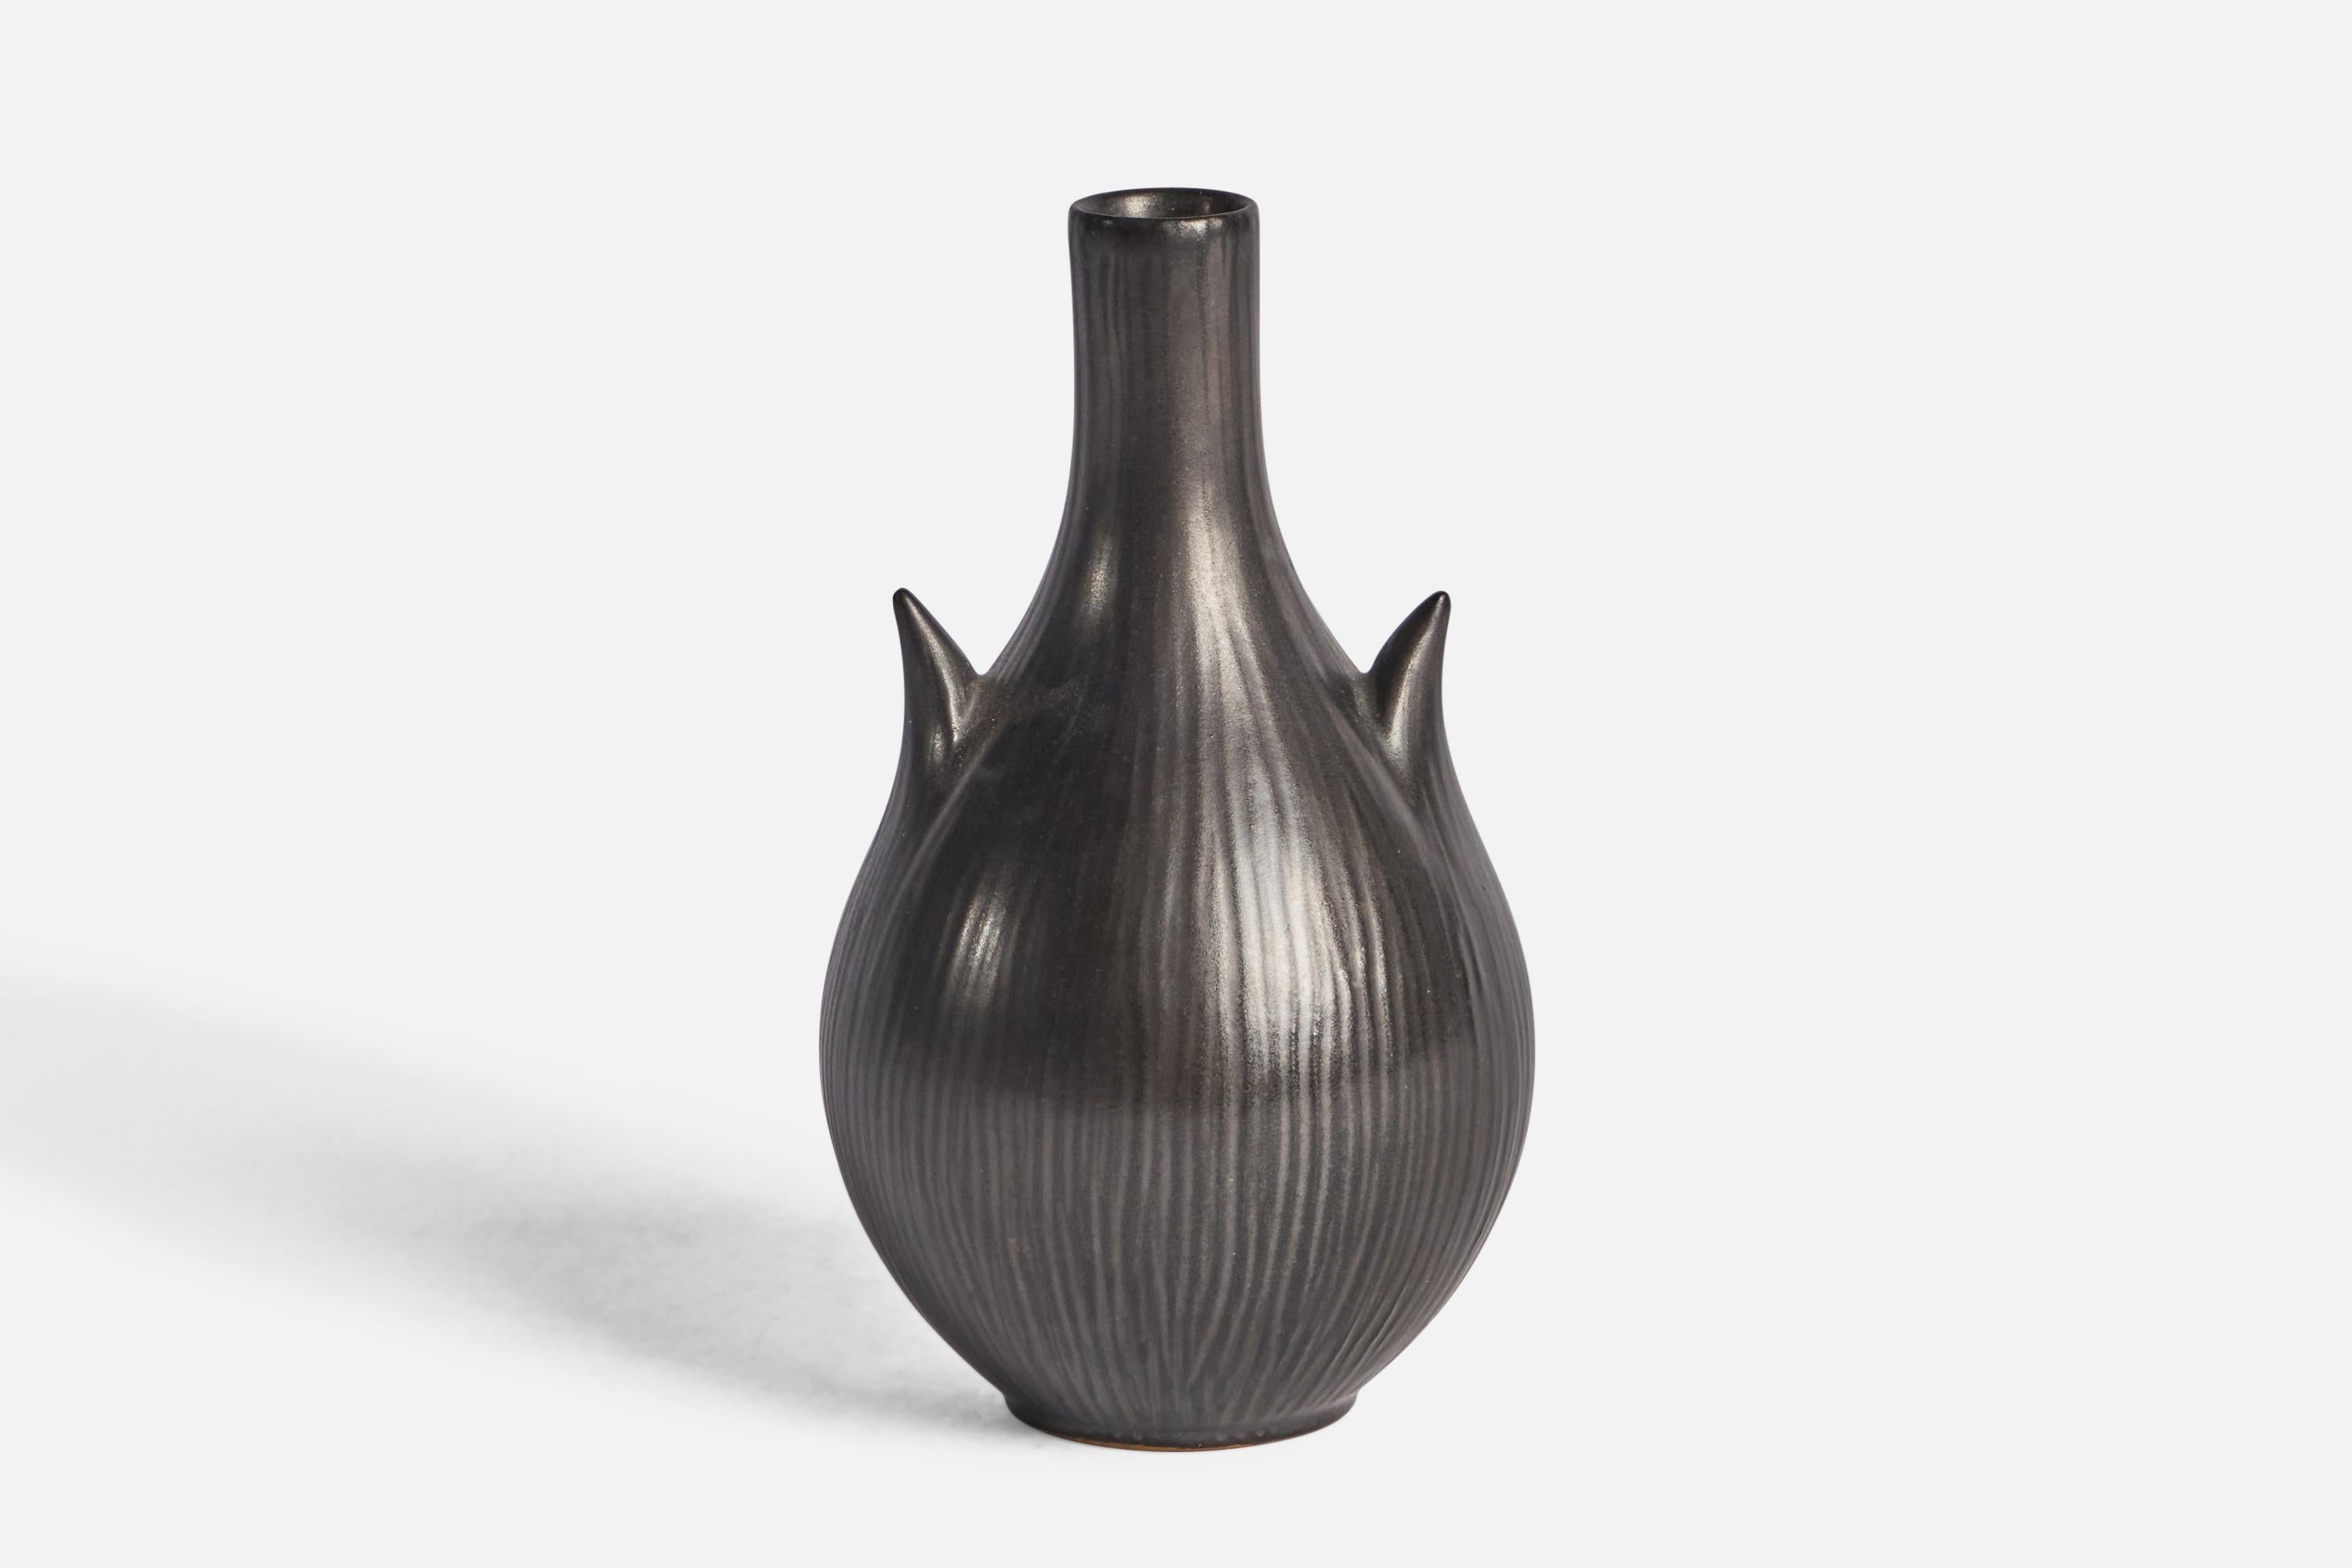 Schwarz glasierte und geritzte Vase, entworfen und hergestellt von Ejvind Nielsen, Dänemark, ca. 1960er Jahre.

Unterschrift auf der Unterseite auf dem Foto